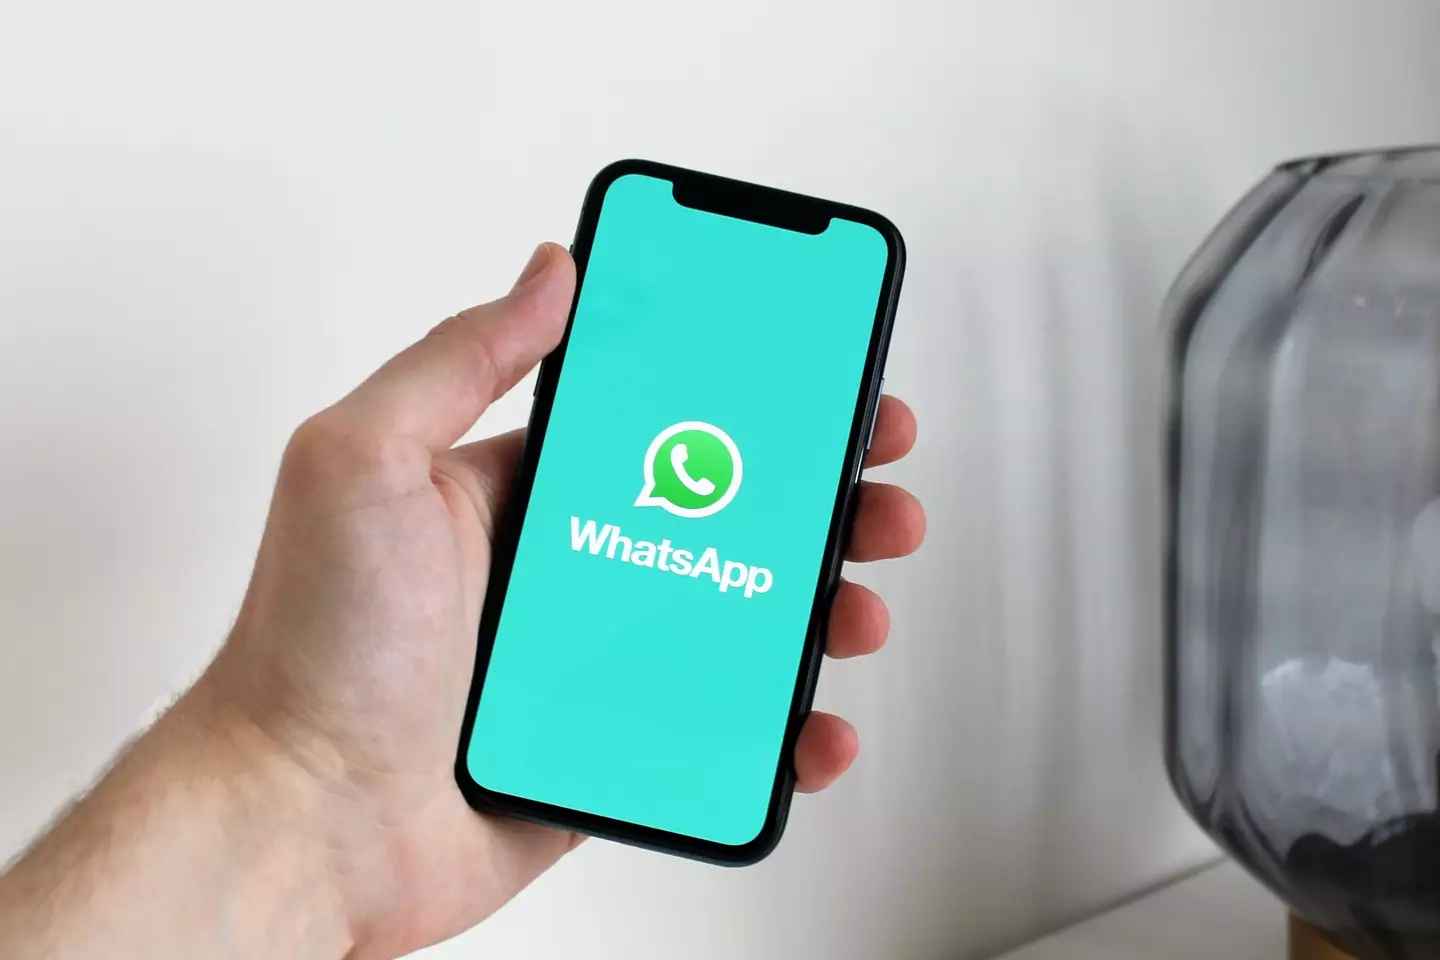 WhatsApp has a hidden feature (